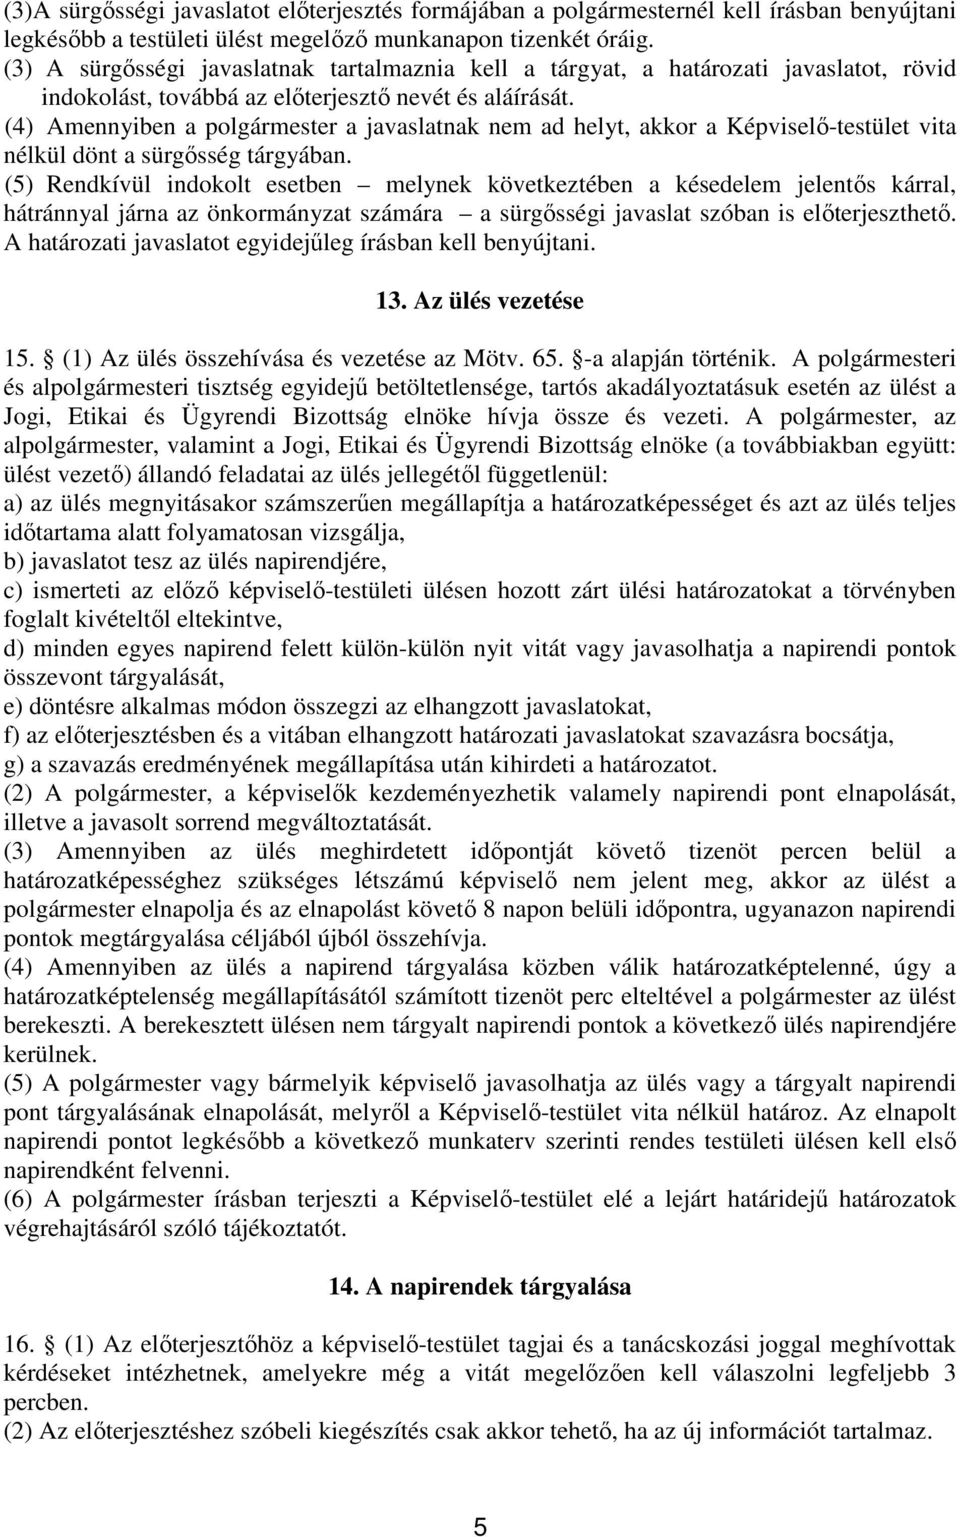 (4) Amennyiben a polgármester a javaslatnak nem ad helyt, akkor a Képviselı-testület vita nélkül dönt a sürgısség tárgyában.